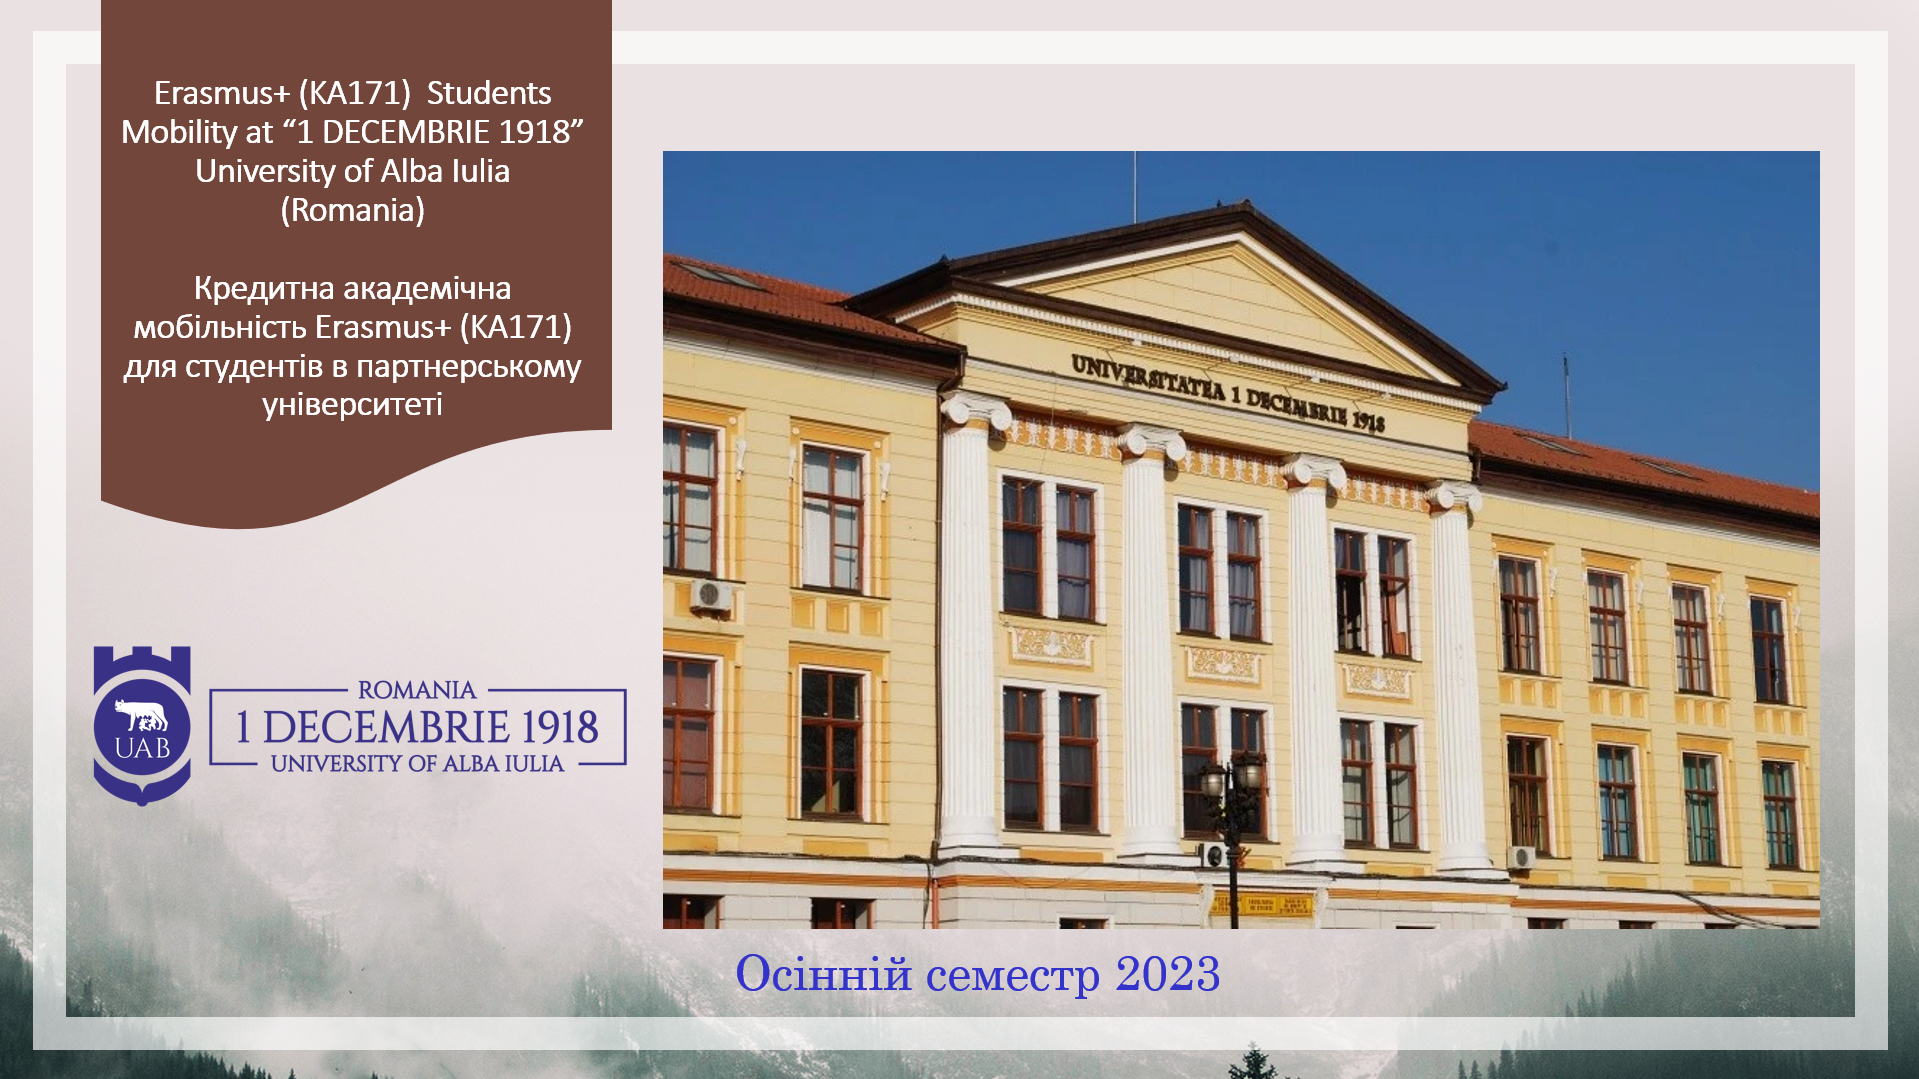 Румунський університет «1 DECEMBRIE 1918» University of Alba Iulia  запрошує взяти участь у програмі кредитної академічної мобільності Erasmus+ в осінньому семестрі 2023 року